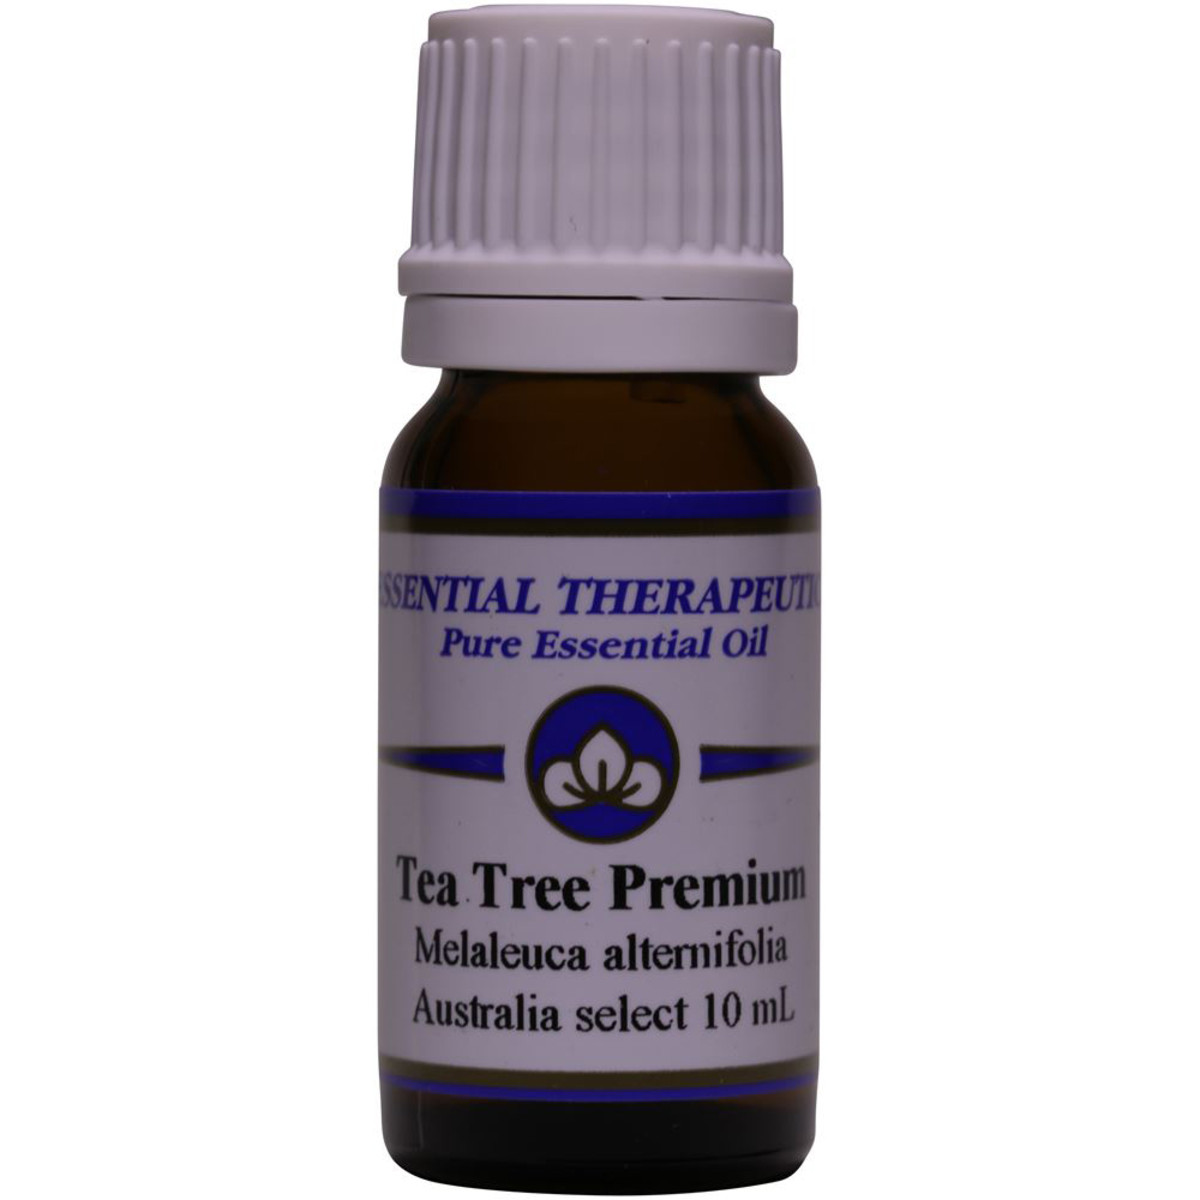 ESSENTIAL THERAPEUTICS - Essential Oil Premium Tea Tree